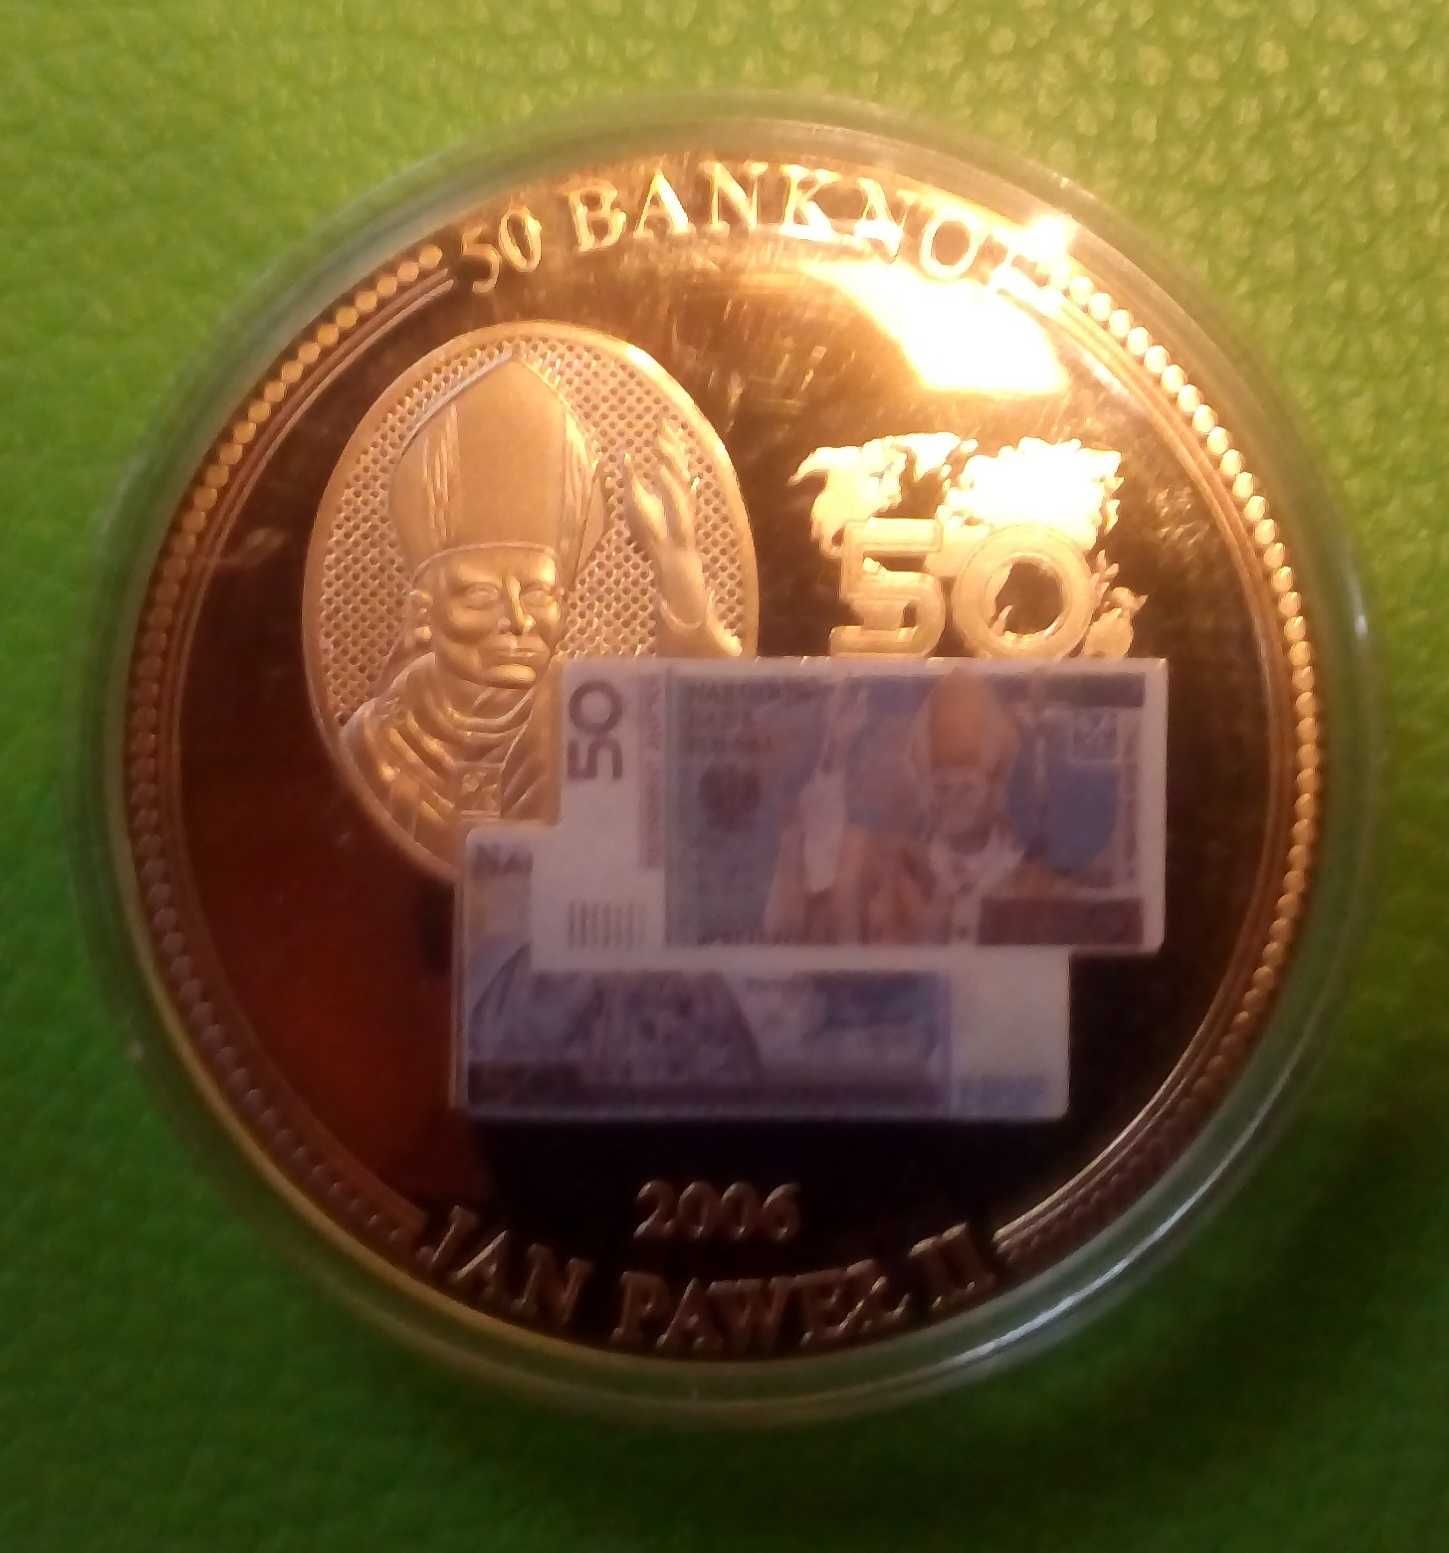 6 x Banknot Medal Mieszko Chrobry Paweł Kazimierz Zygmunt Jagiełło CER